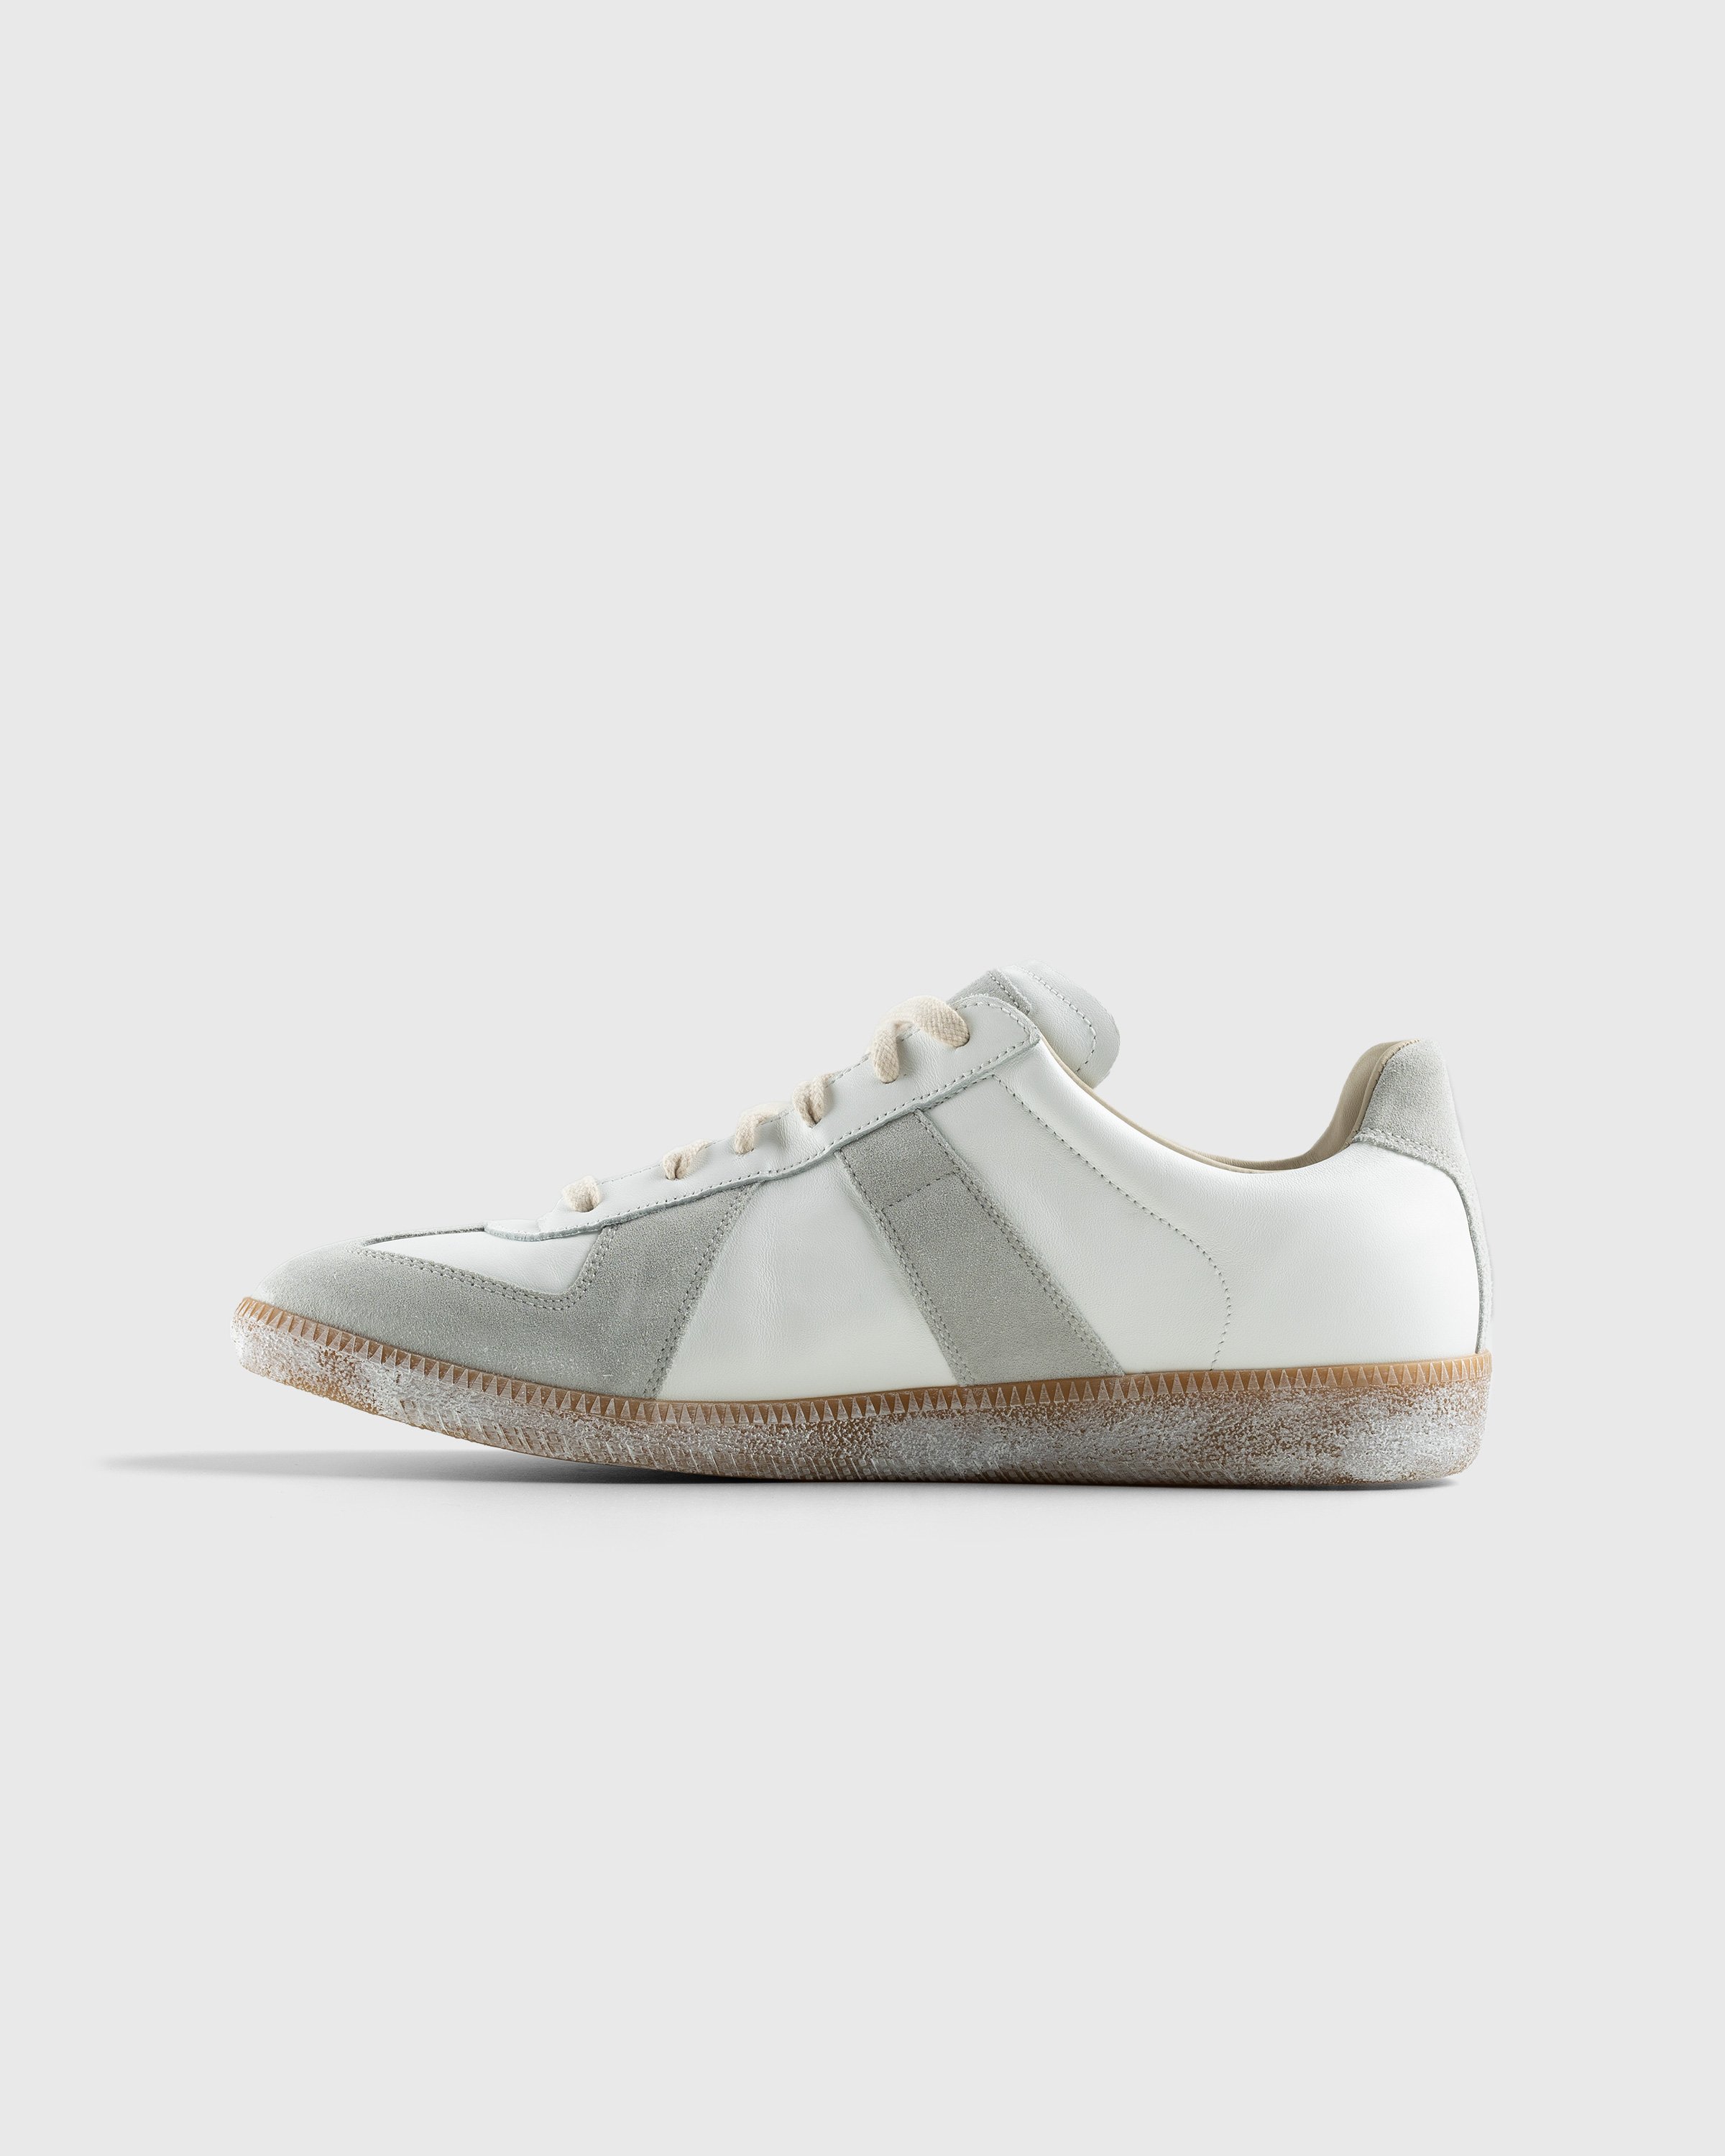 Maison Margiela - Replica Low Top All White - Footwear - Beige - Image 2